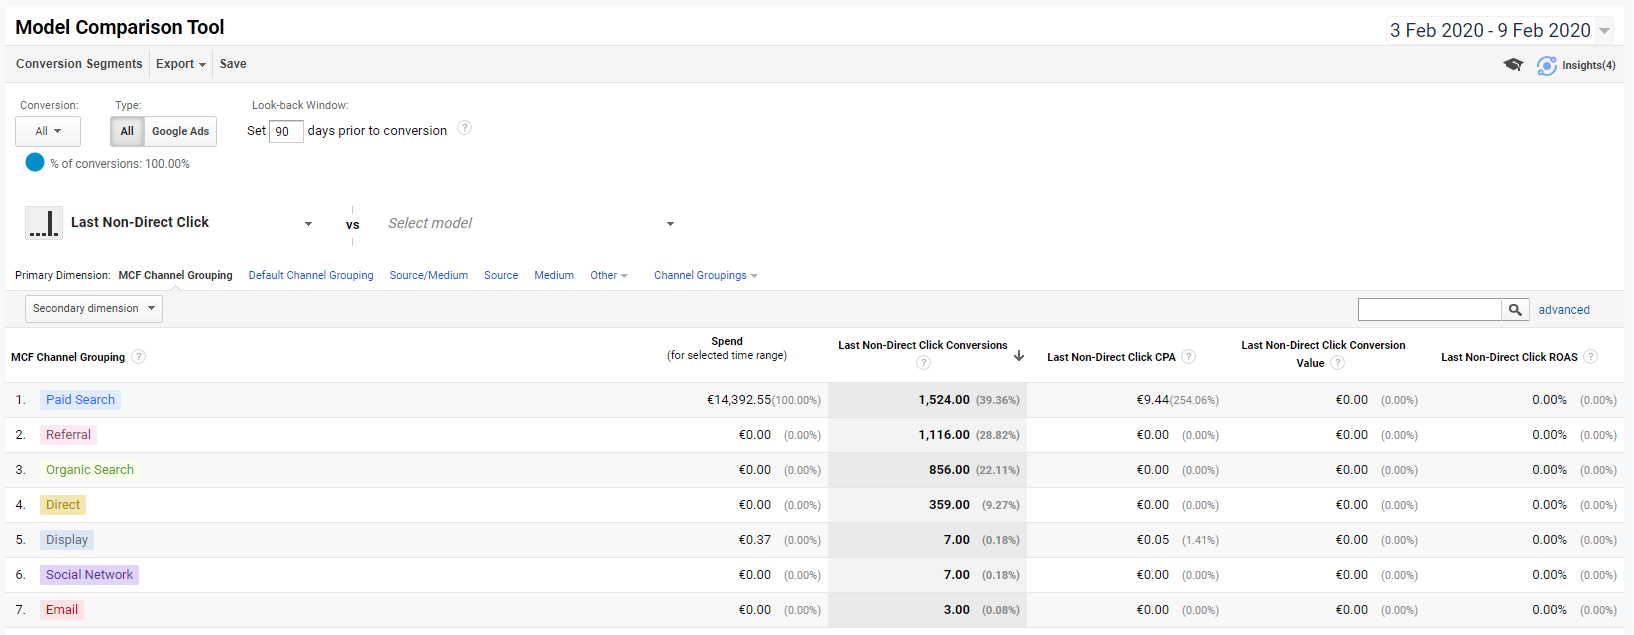 Google Analytics Model Comparison Tool - Last Non-Direct Click